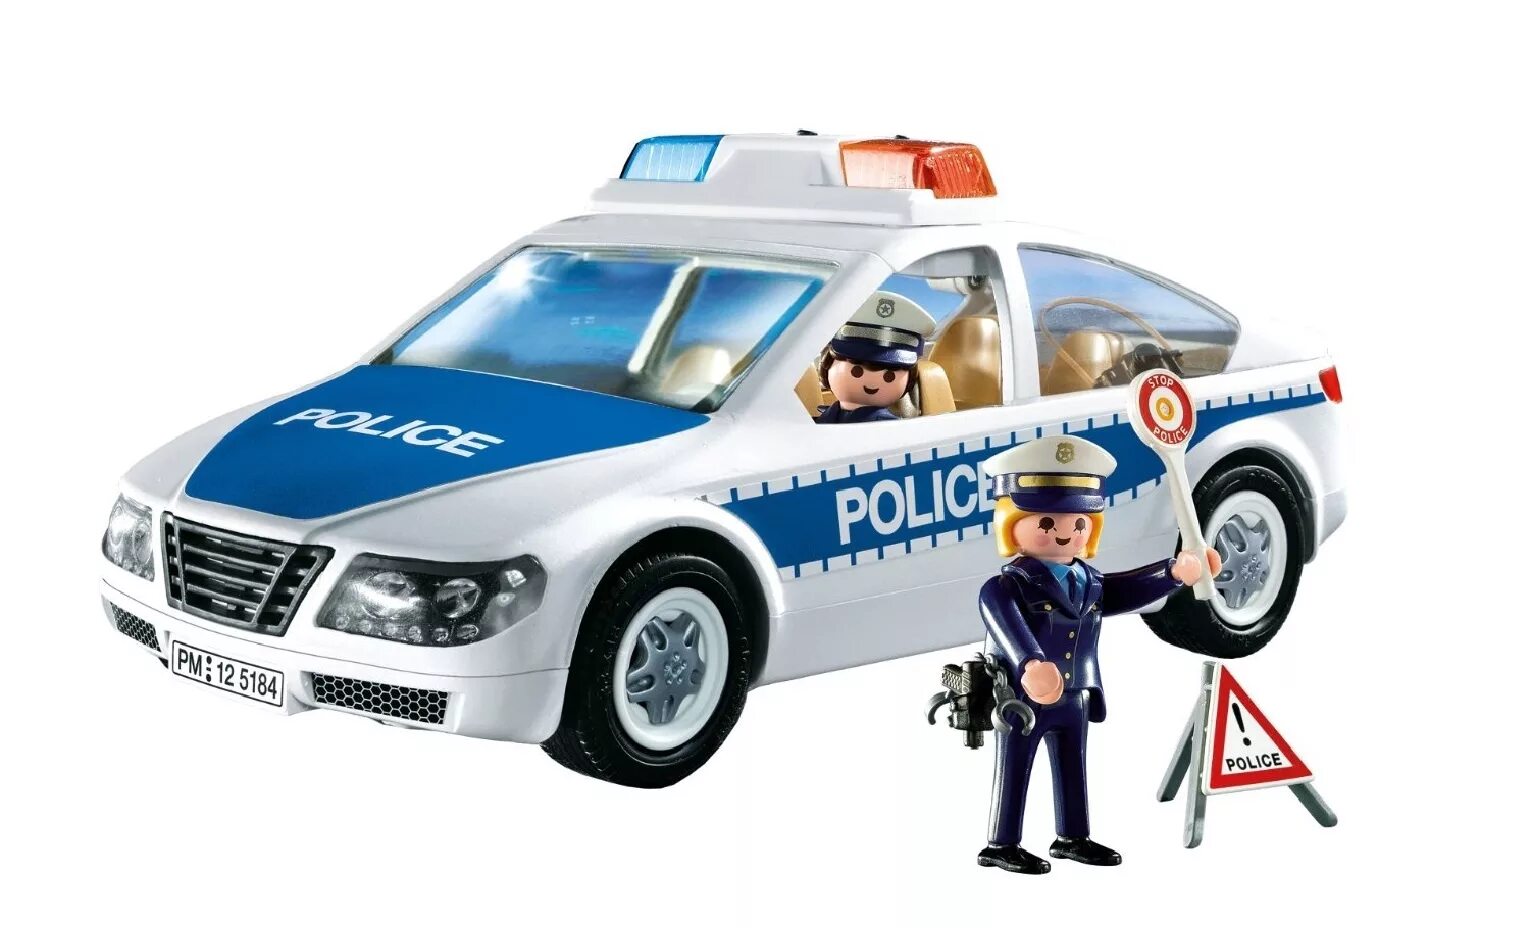 Playmobil полиция 6920. Плеймобил полиция 5184. Плеймобиль полиция полиц маш. Playmobil Police 5184. Машинка про полицию